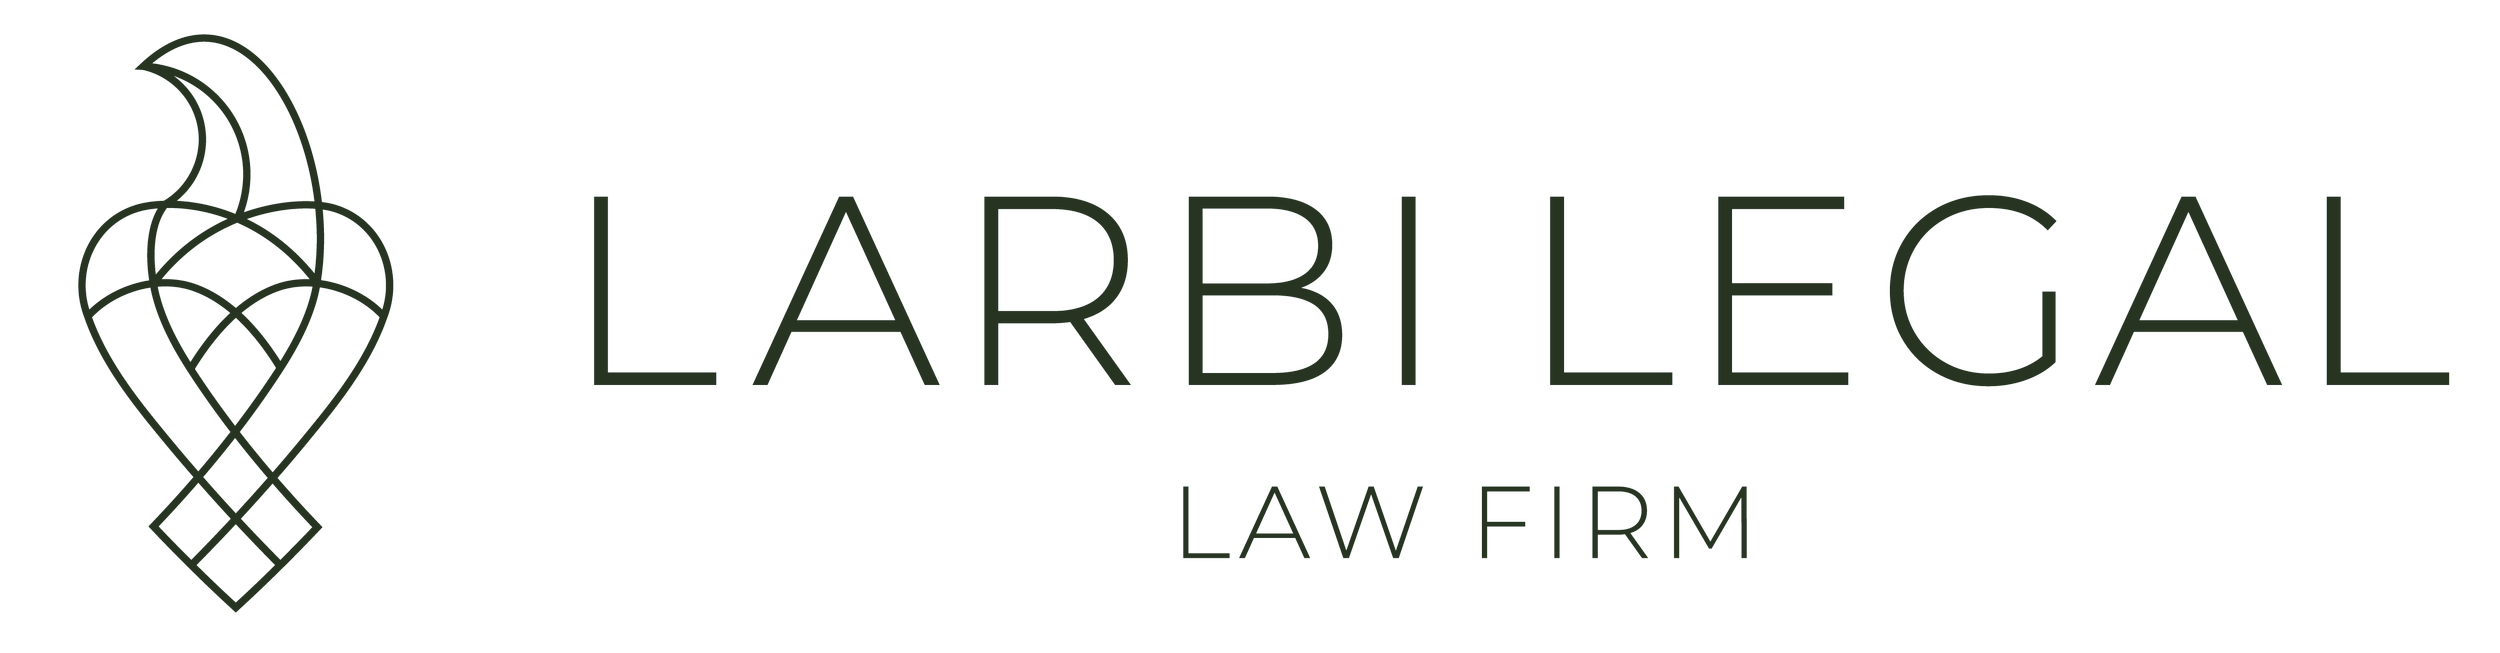 Larbi-Legal-logo.png